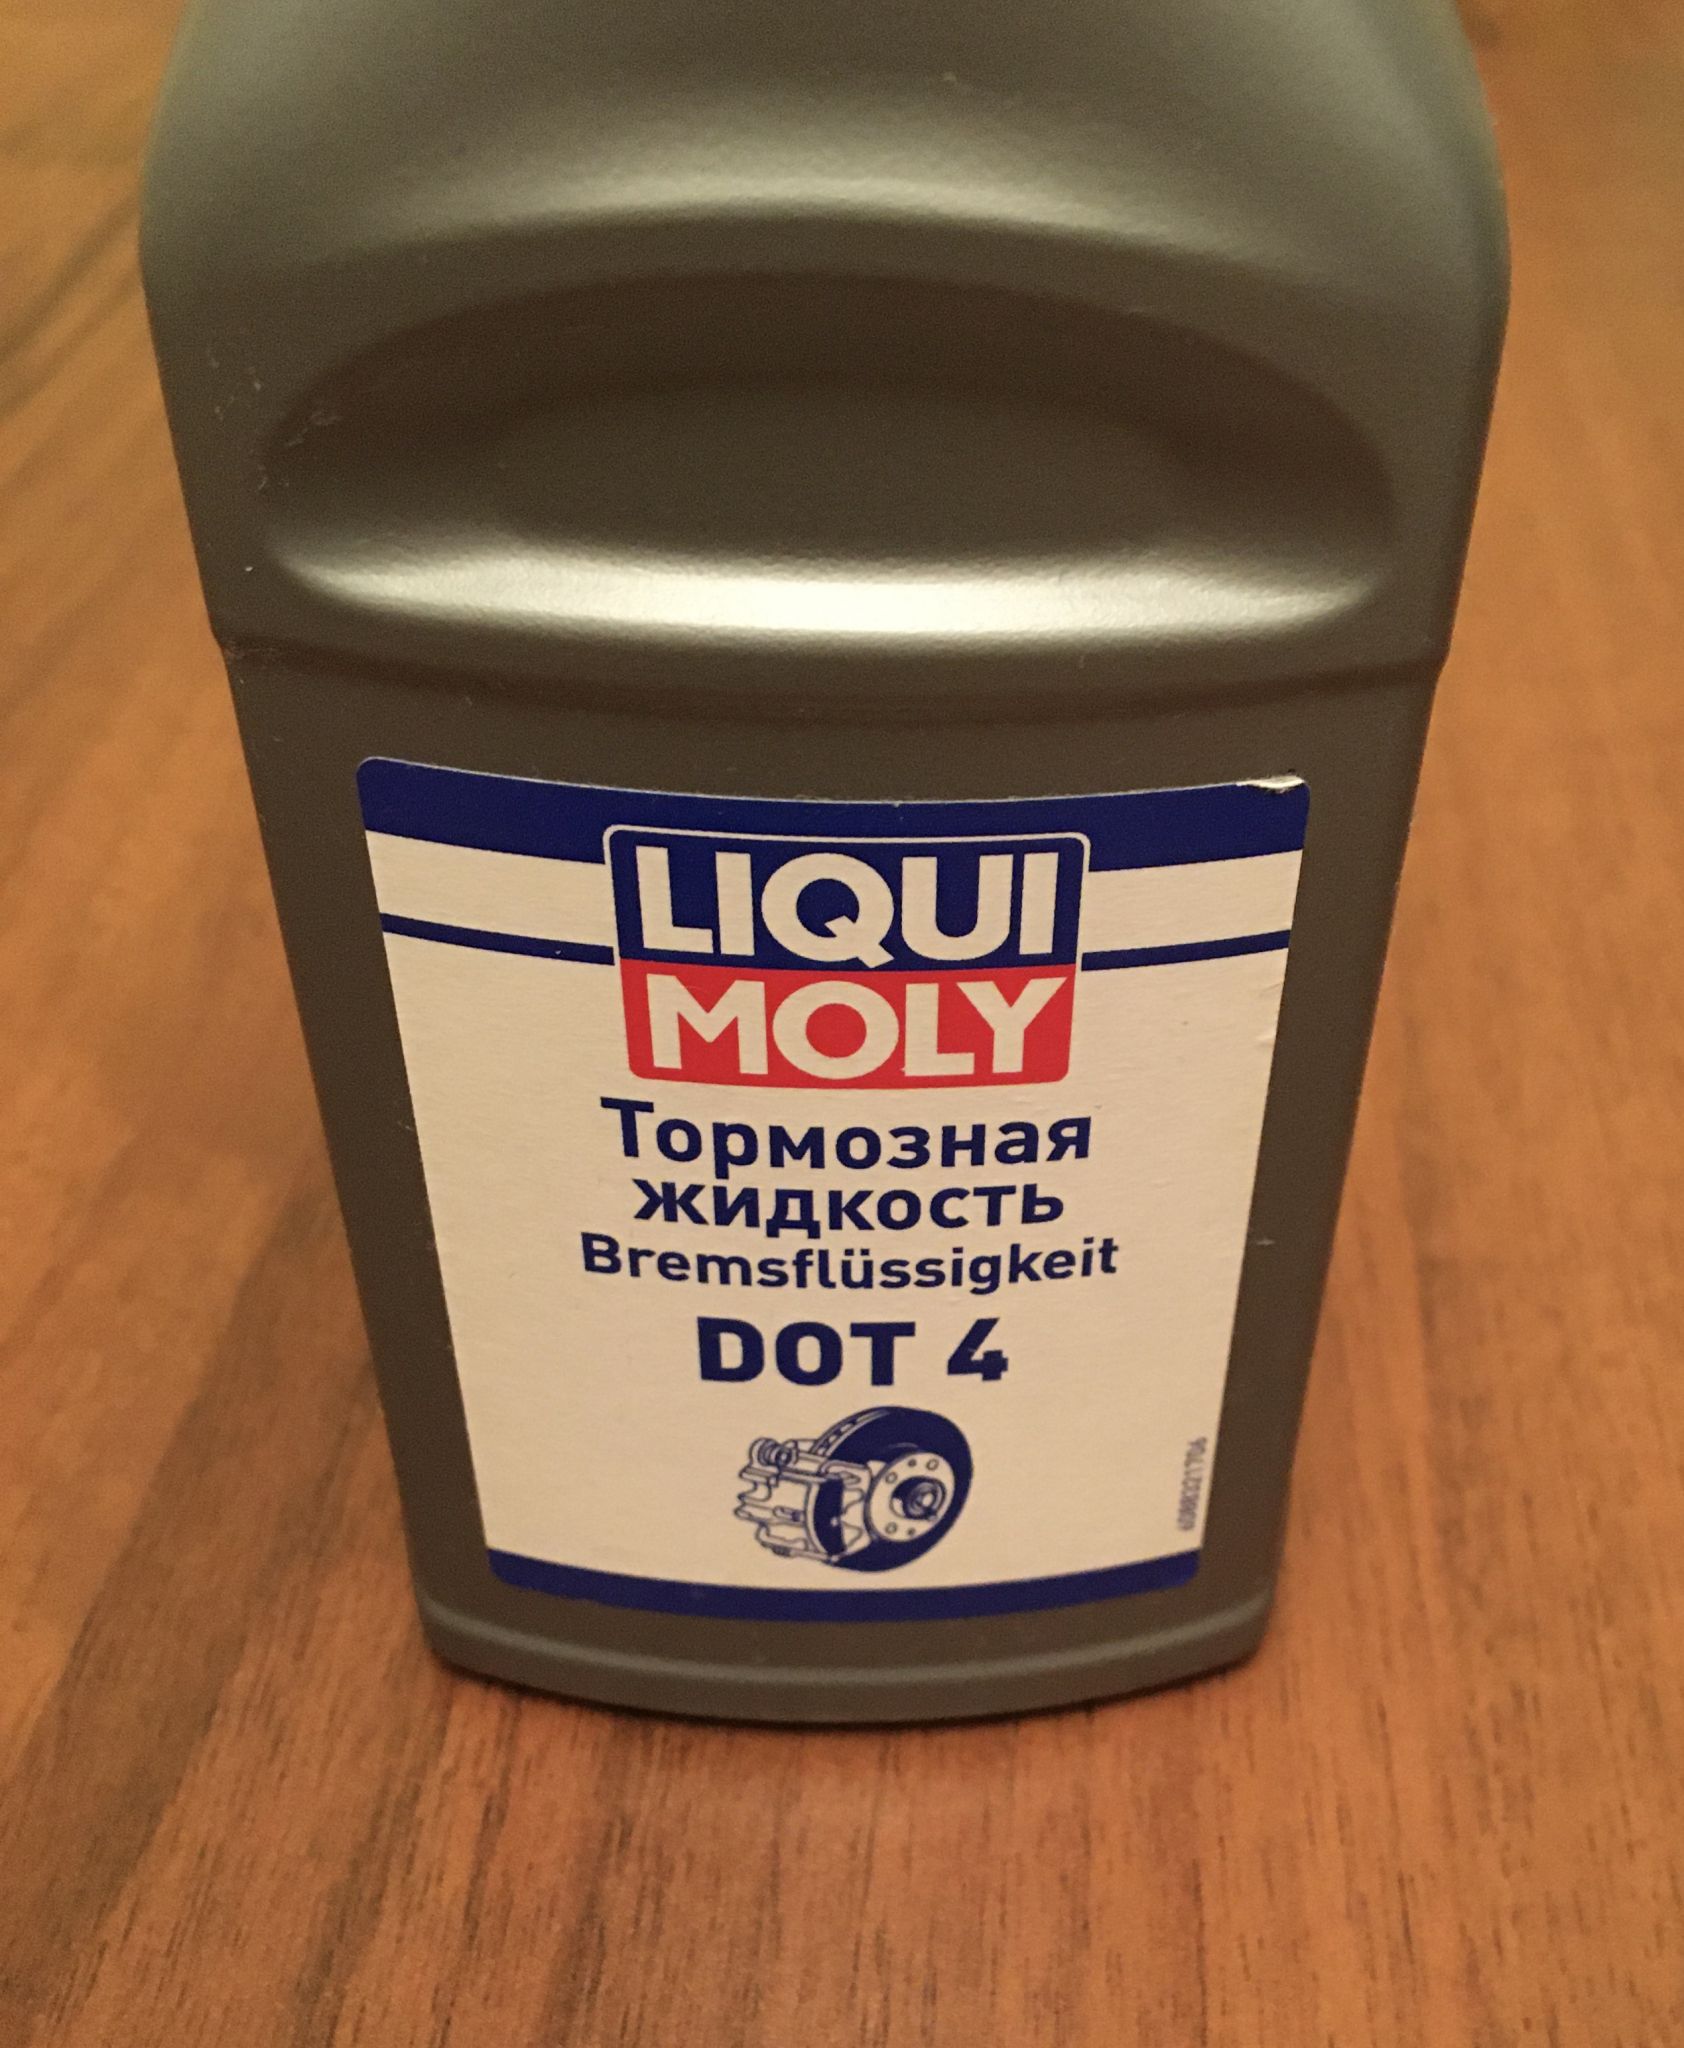 Liqui Moly 21155 Bremsflüssigkeit DOT 4 - 250 ml, 3,09 €